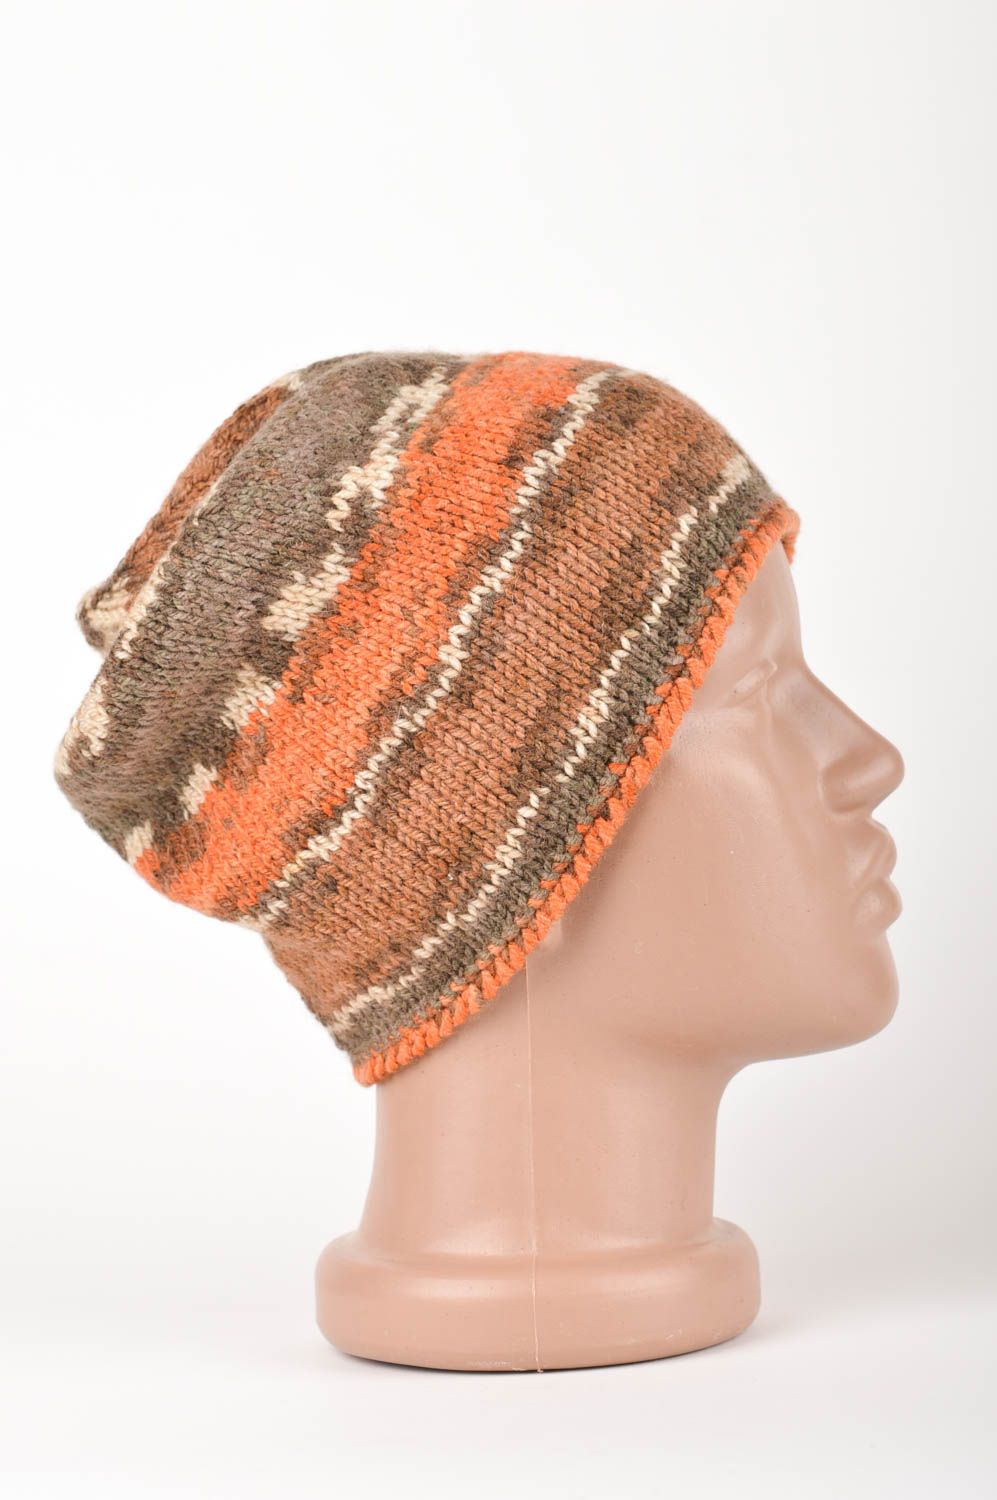 Вязаная шапка ручной работы зимняя шапка трехцветная вязаная шапочка шерстяная фото 3